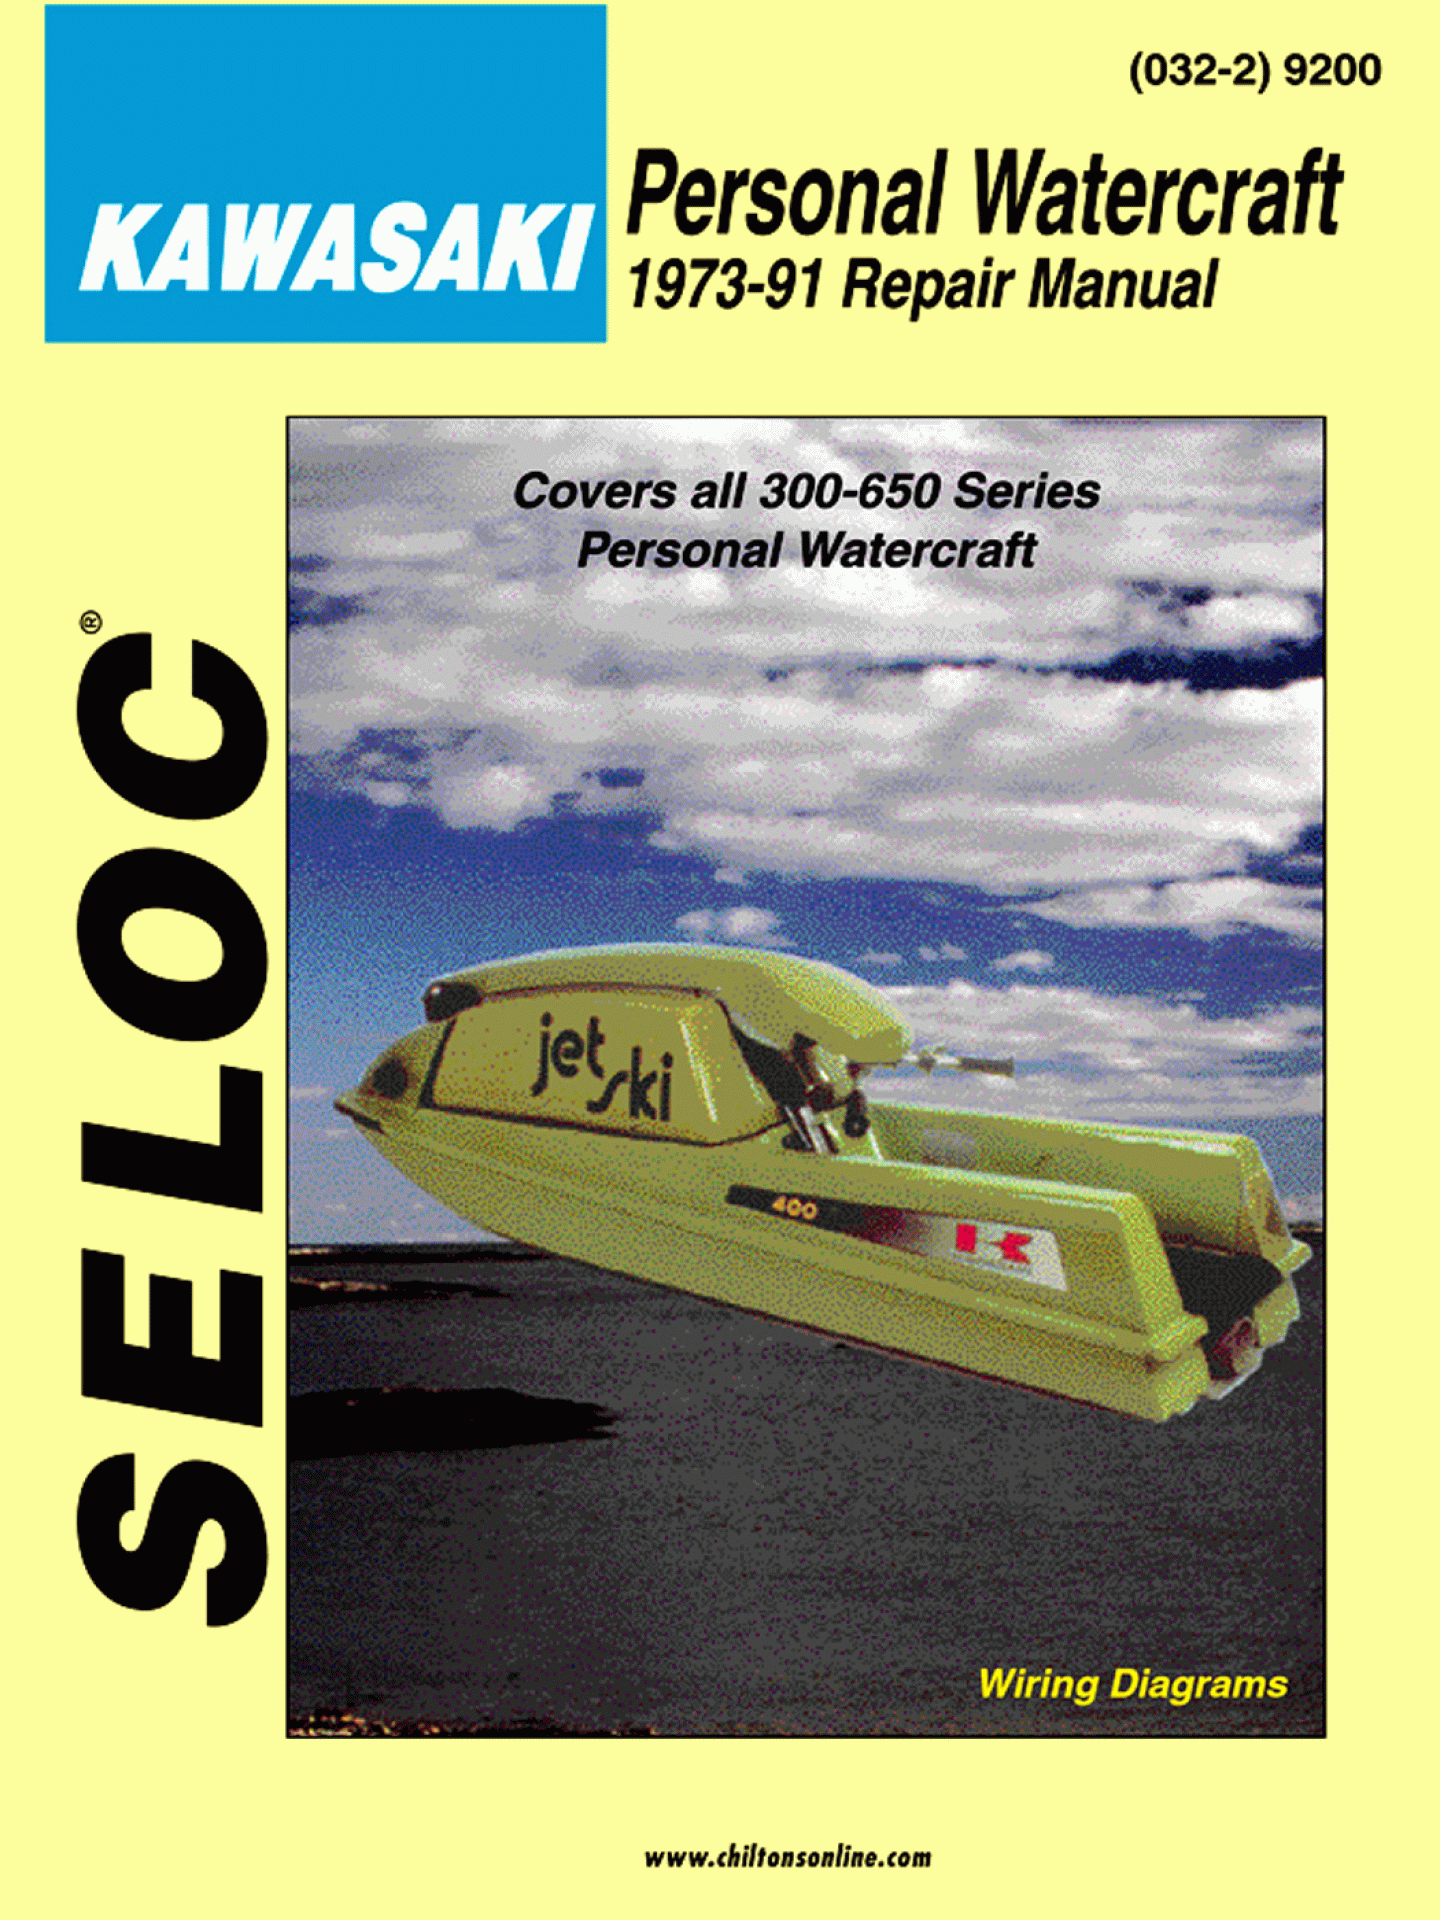 SELOC PUBLISHING | 18-09200 | REPAIR MANUAL Kawasaki Personal Watercraft 1973-91